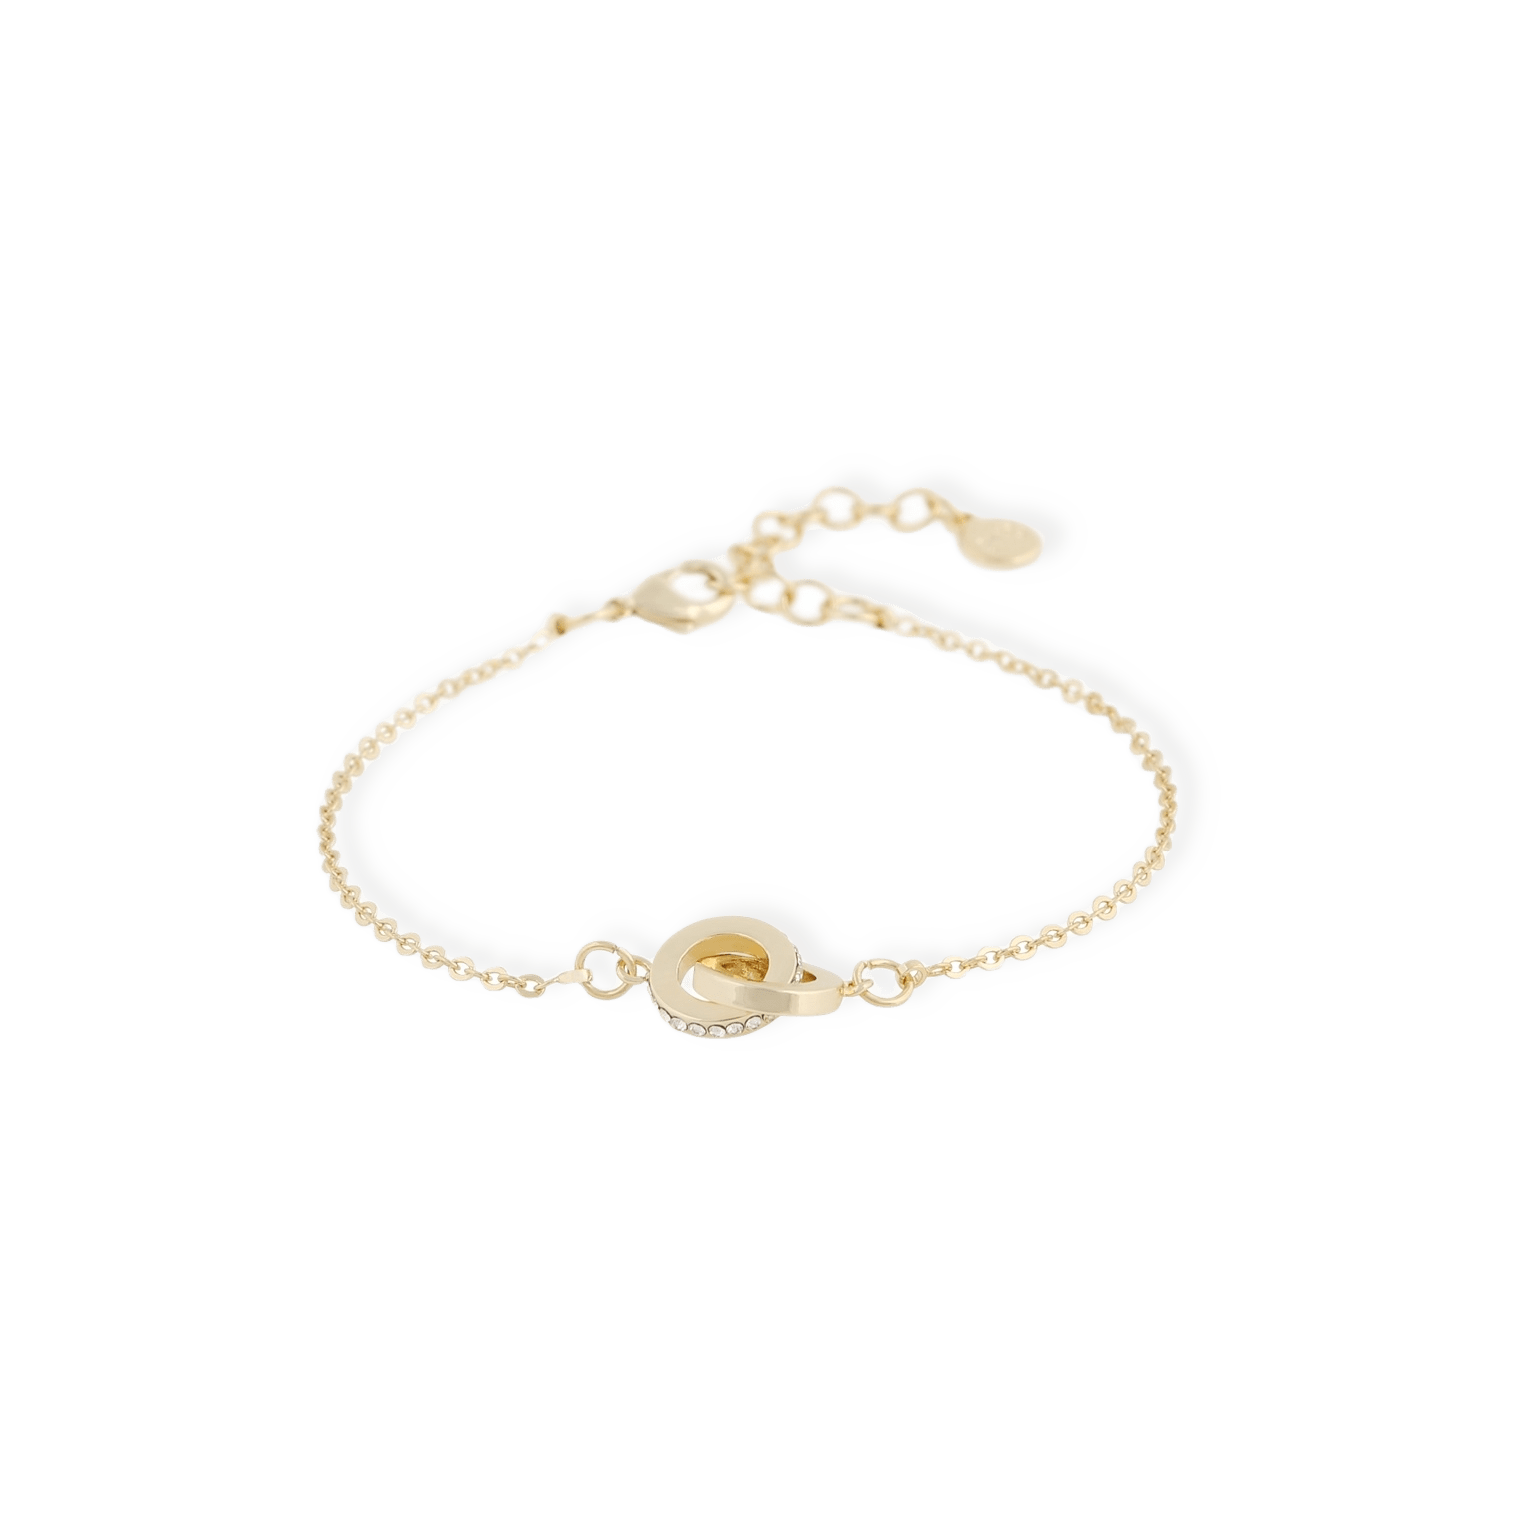 Connected Chain Bracelet från SNÖ of Sweden